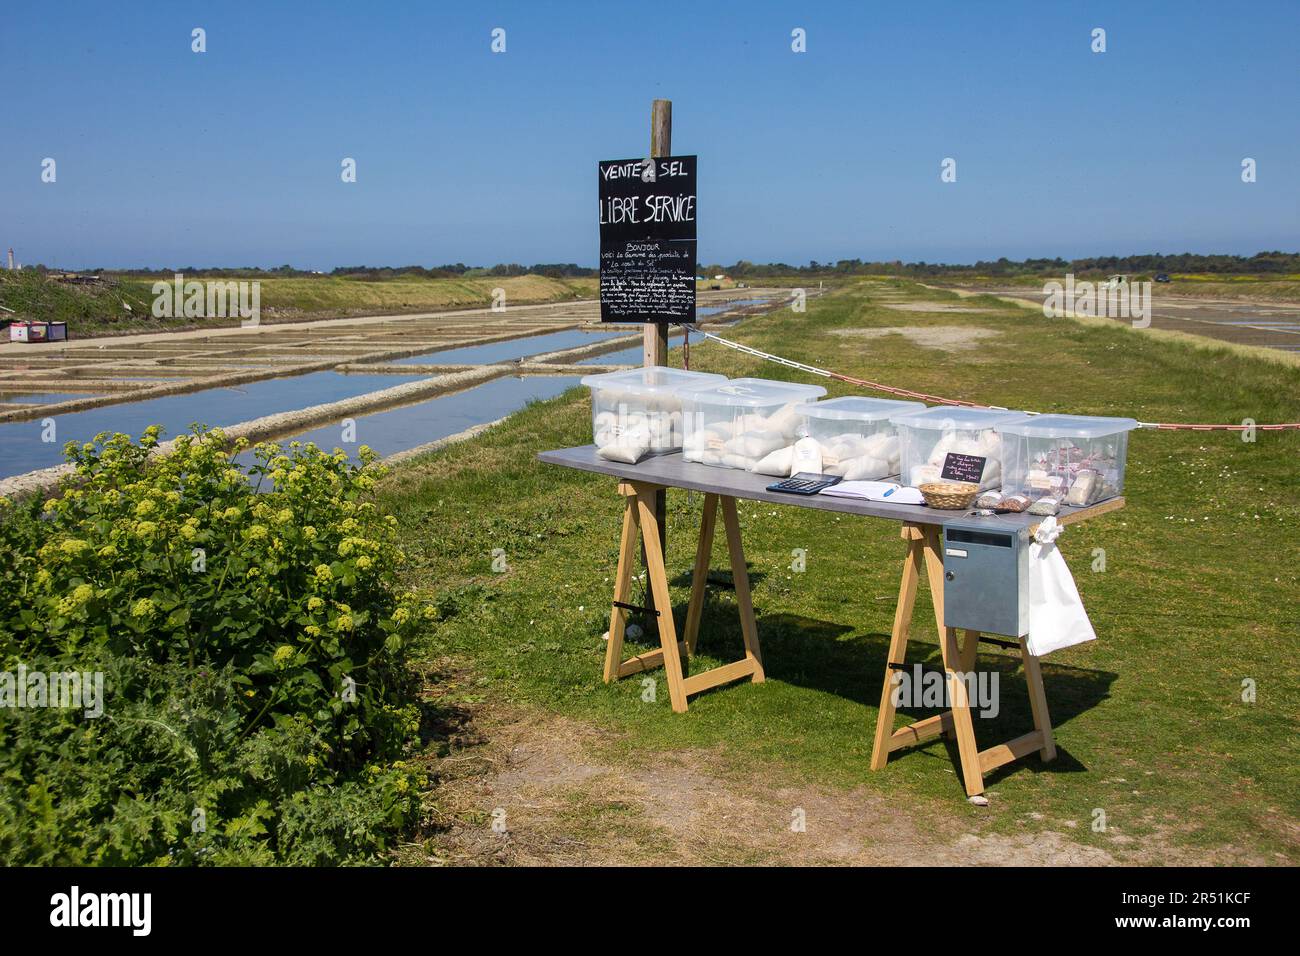 Vente de sel dans les marais salants de l'ile de Ré, Frankreich Stockfoto